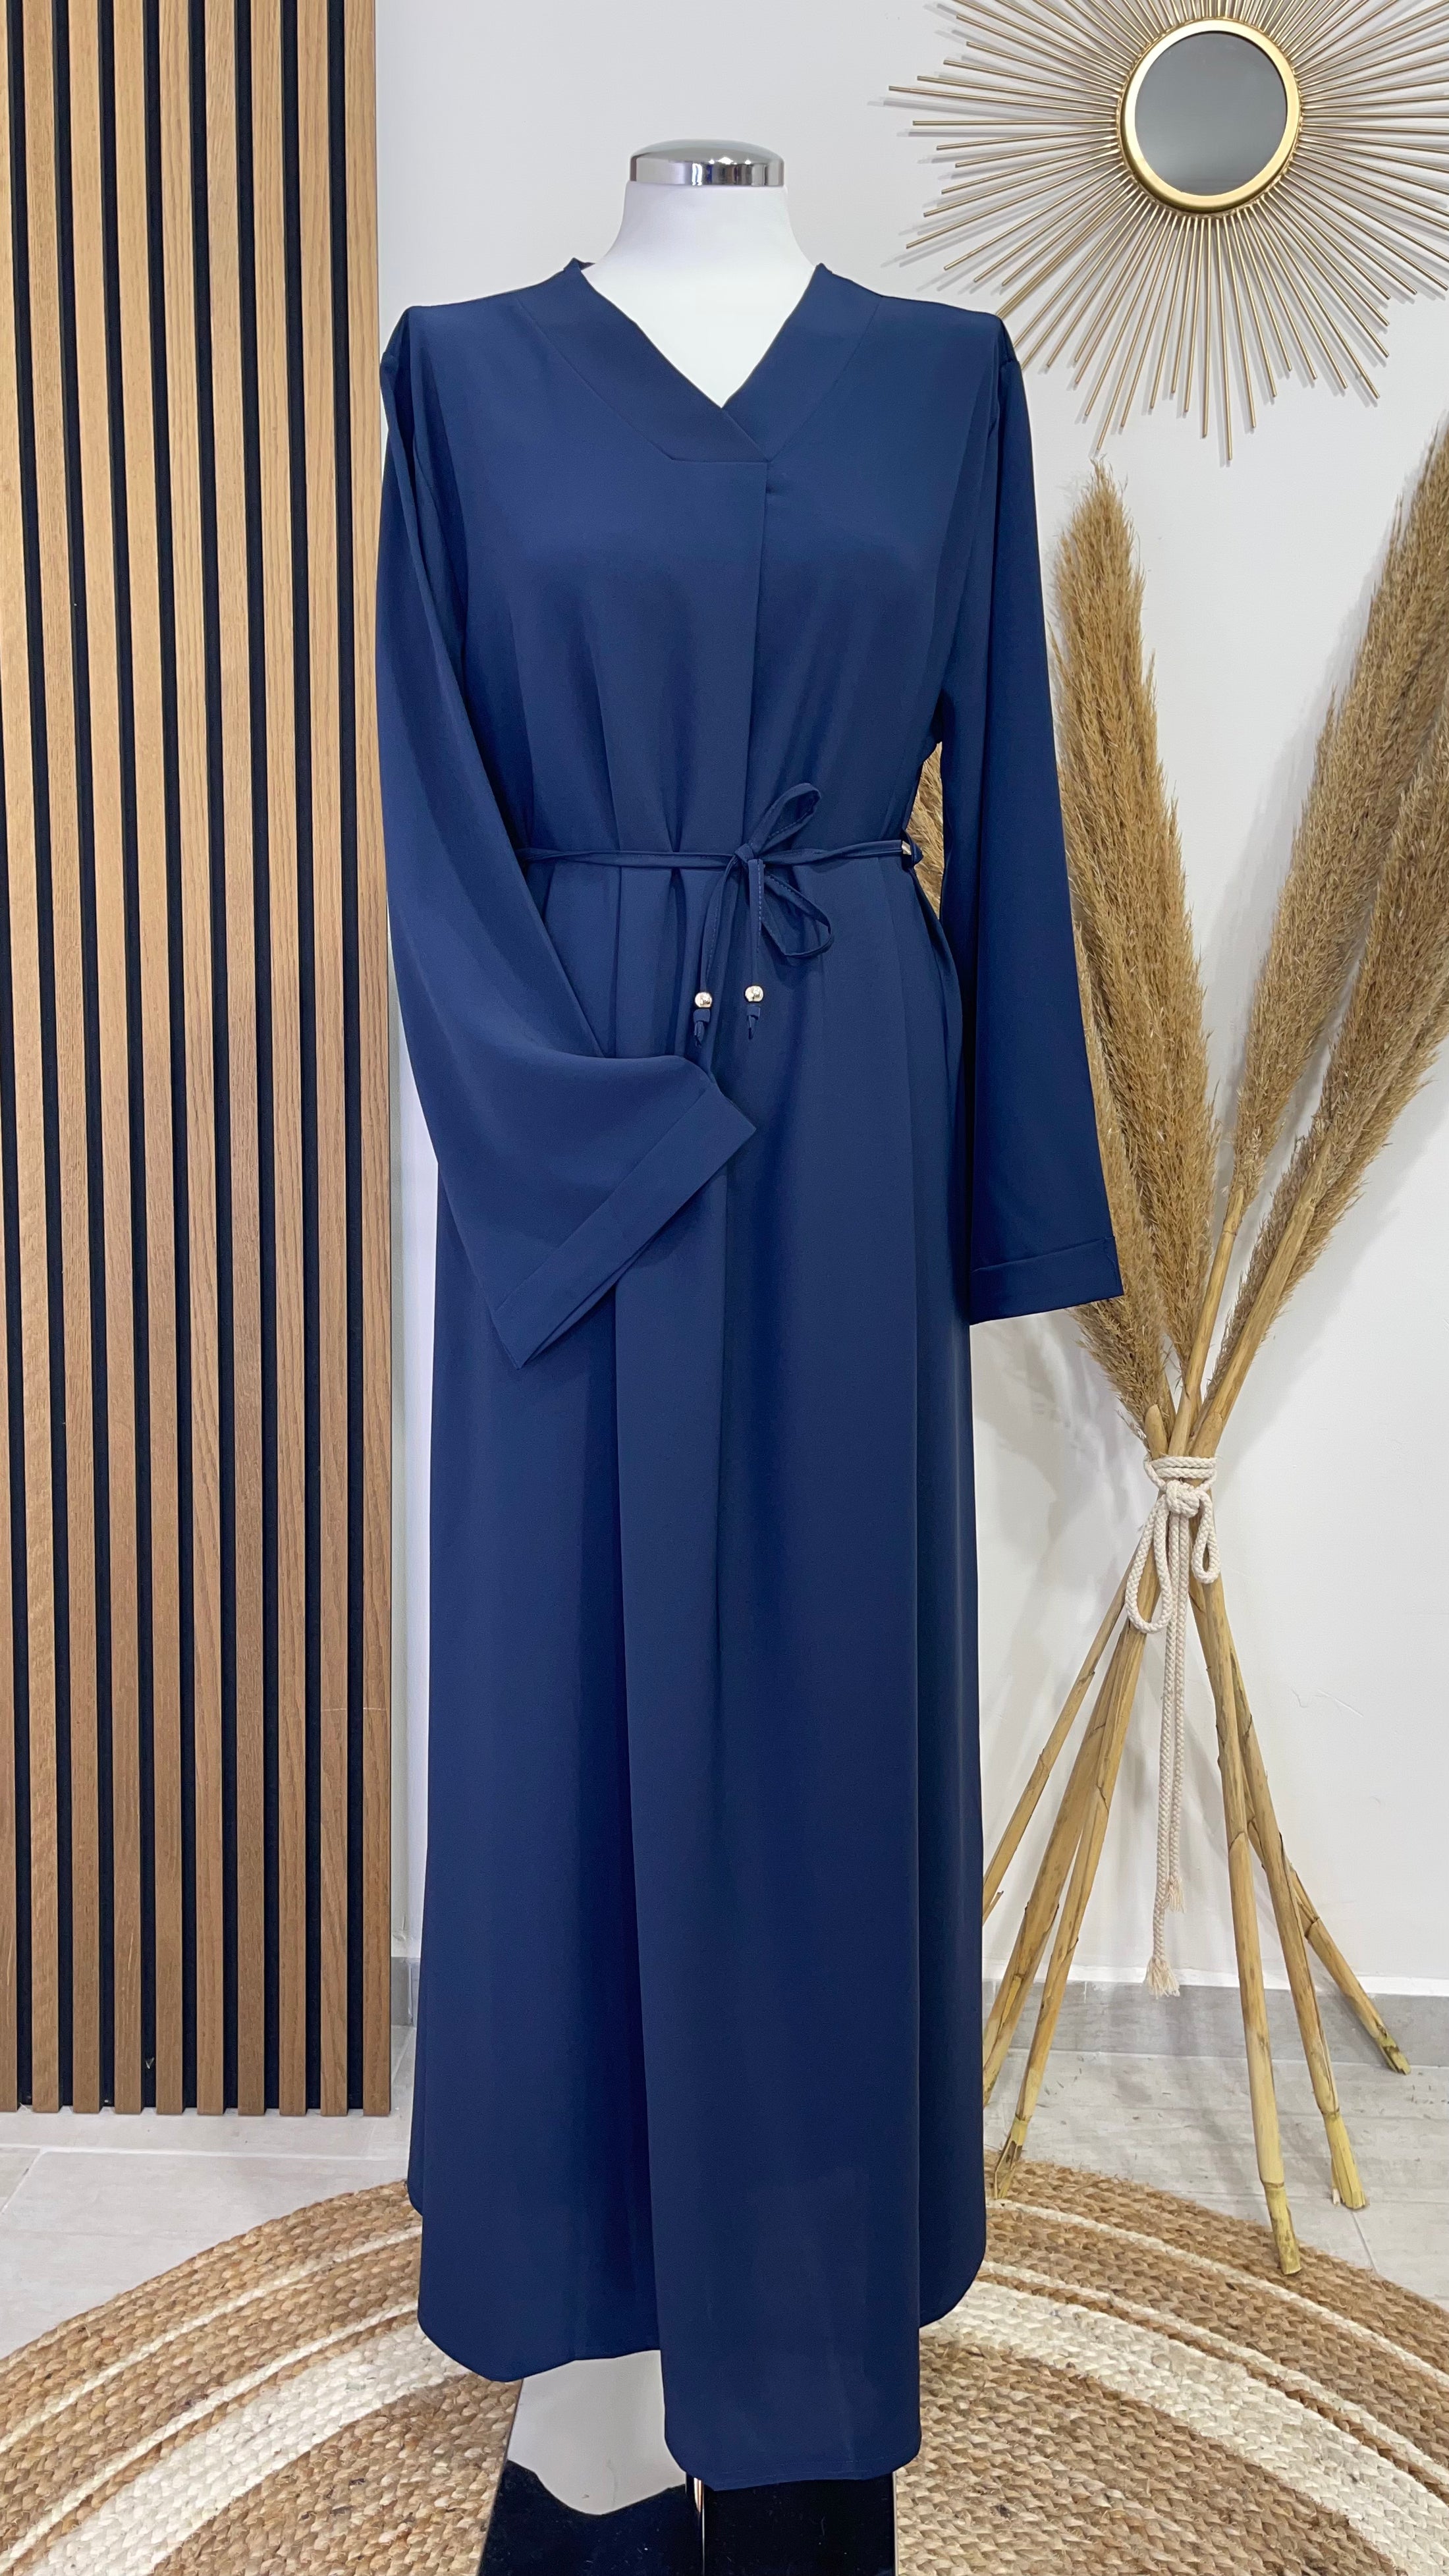 Vestito, abaya, semplice, collo a V, maniche larghe,  colore unico, cintutino in vita, polsi arricciati, indossato da manichino, Hijab Paradise, blu, donna musulmana